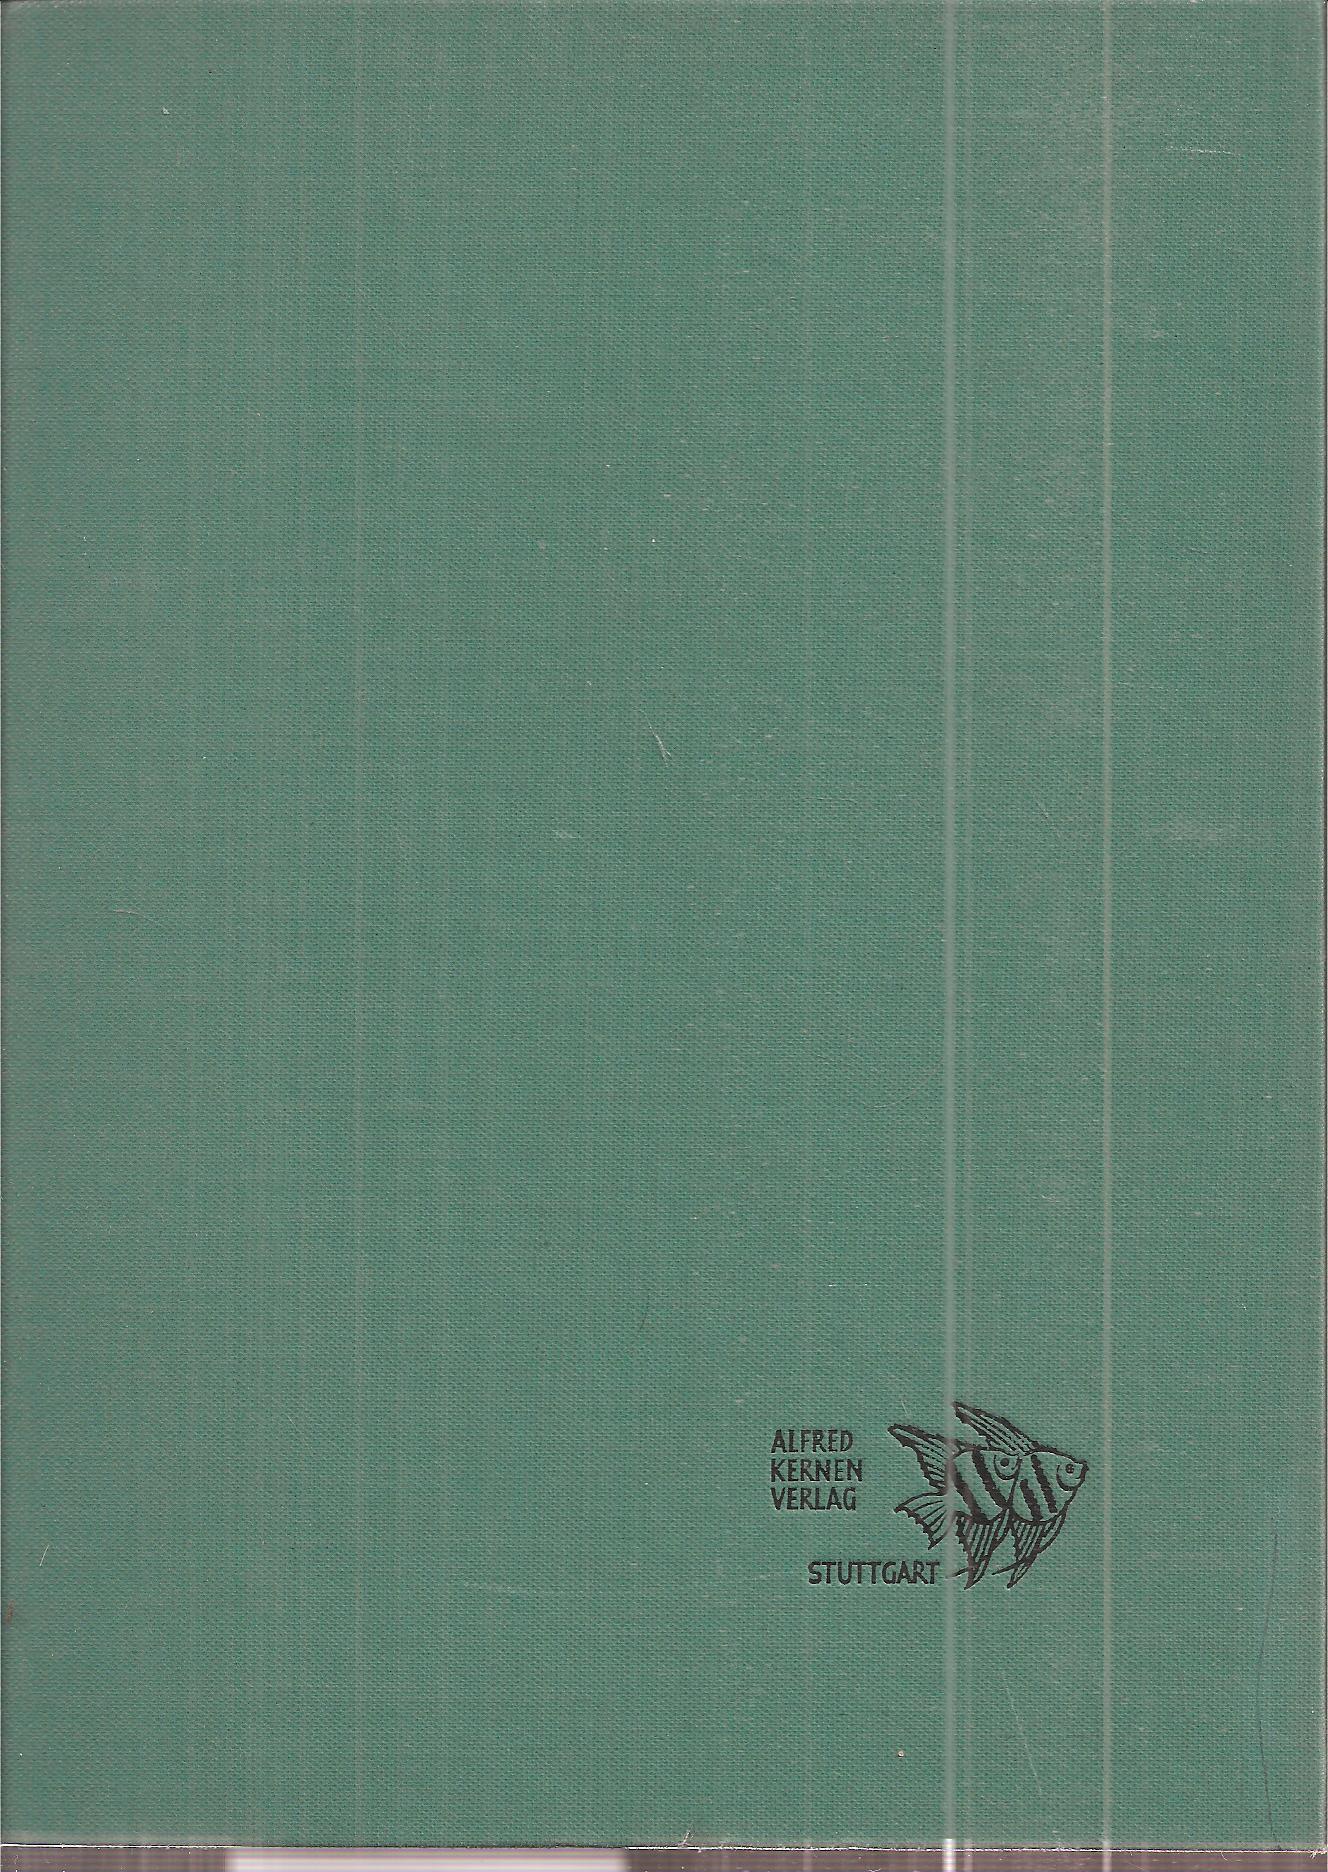 DATZ Die Aquarien- und Terrarien-Zeitschrift  DATZ Die Aquarien- und Terrarien-Zeitschrift 33.Jahrgang 1980 